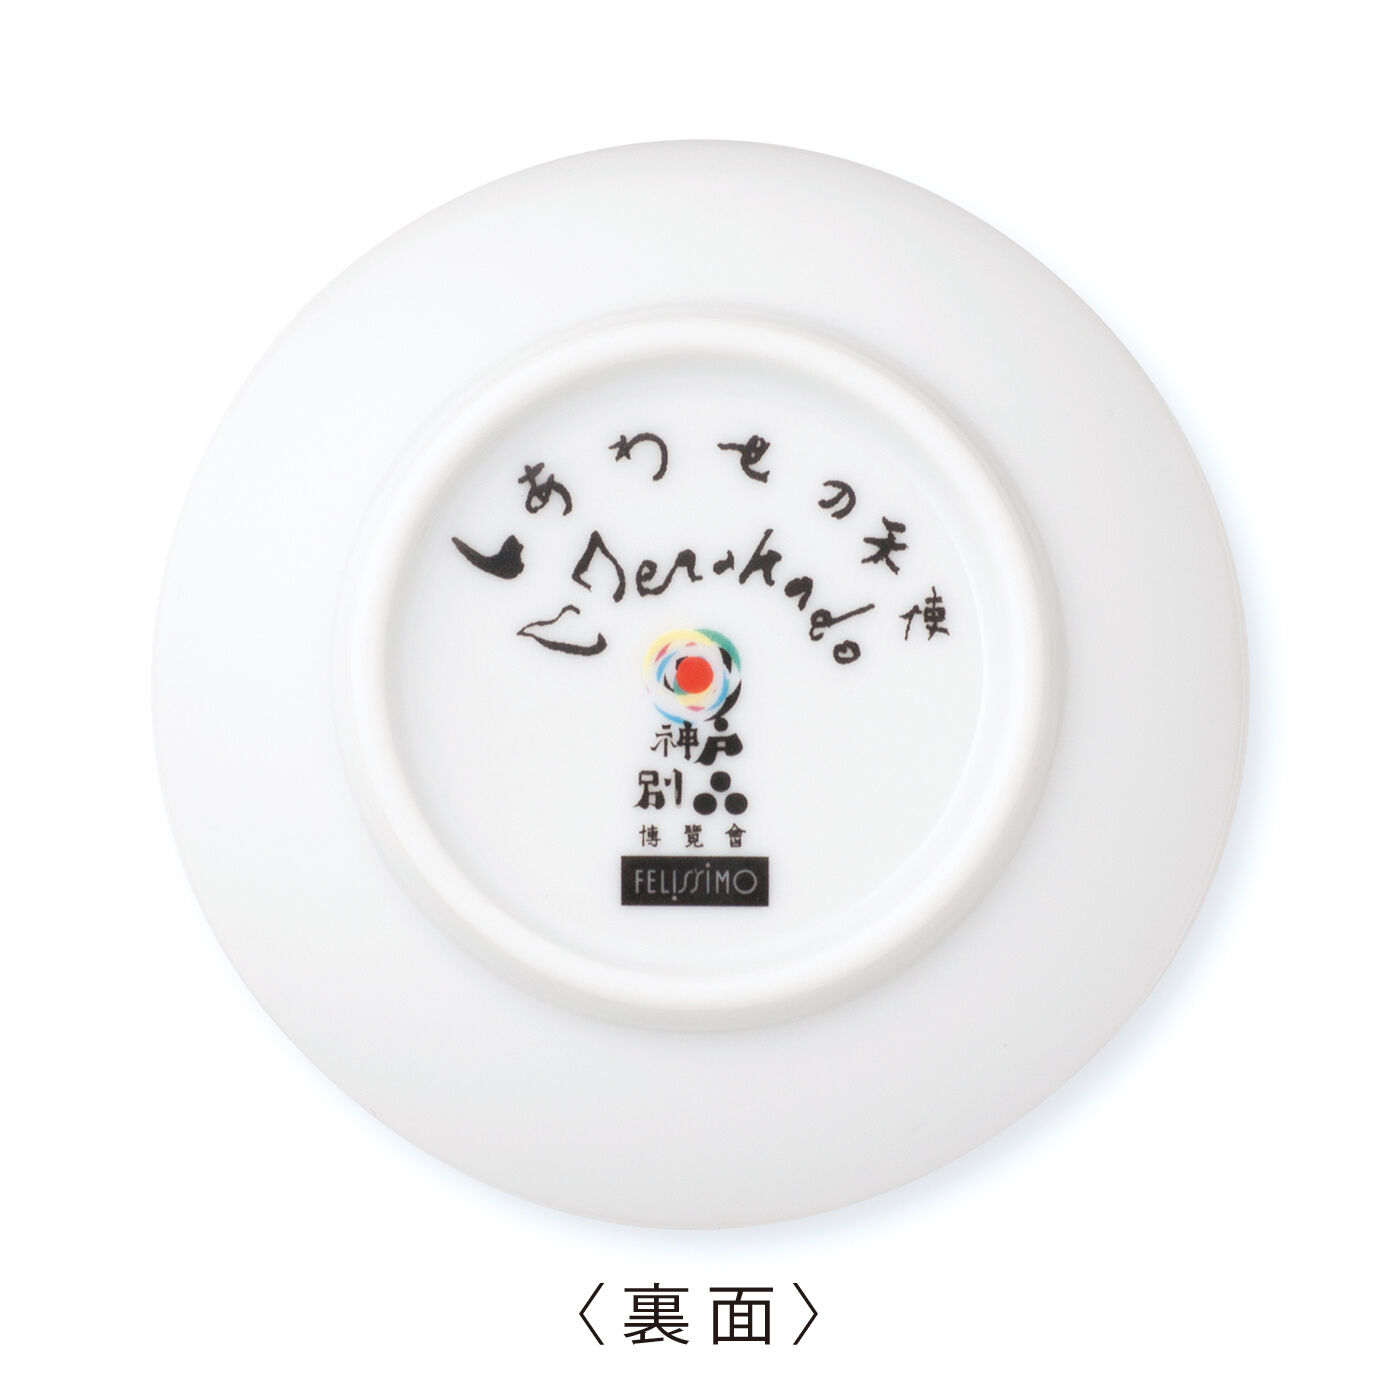 Real Stock|21の天使の豆皿|寺門さん自筆の天使のなまえとサイン、別品博覧会のロゴプリント入り。